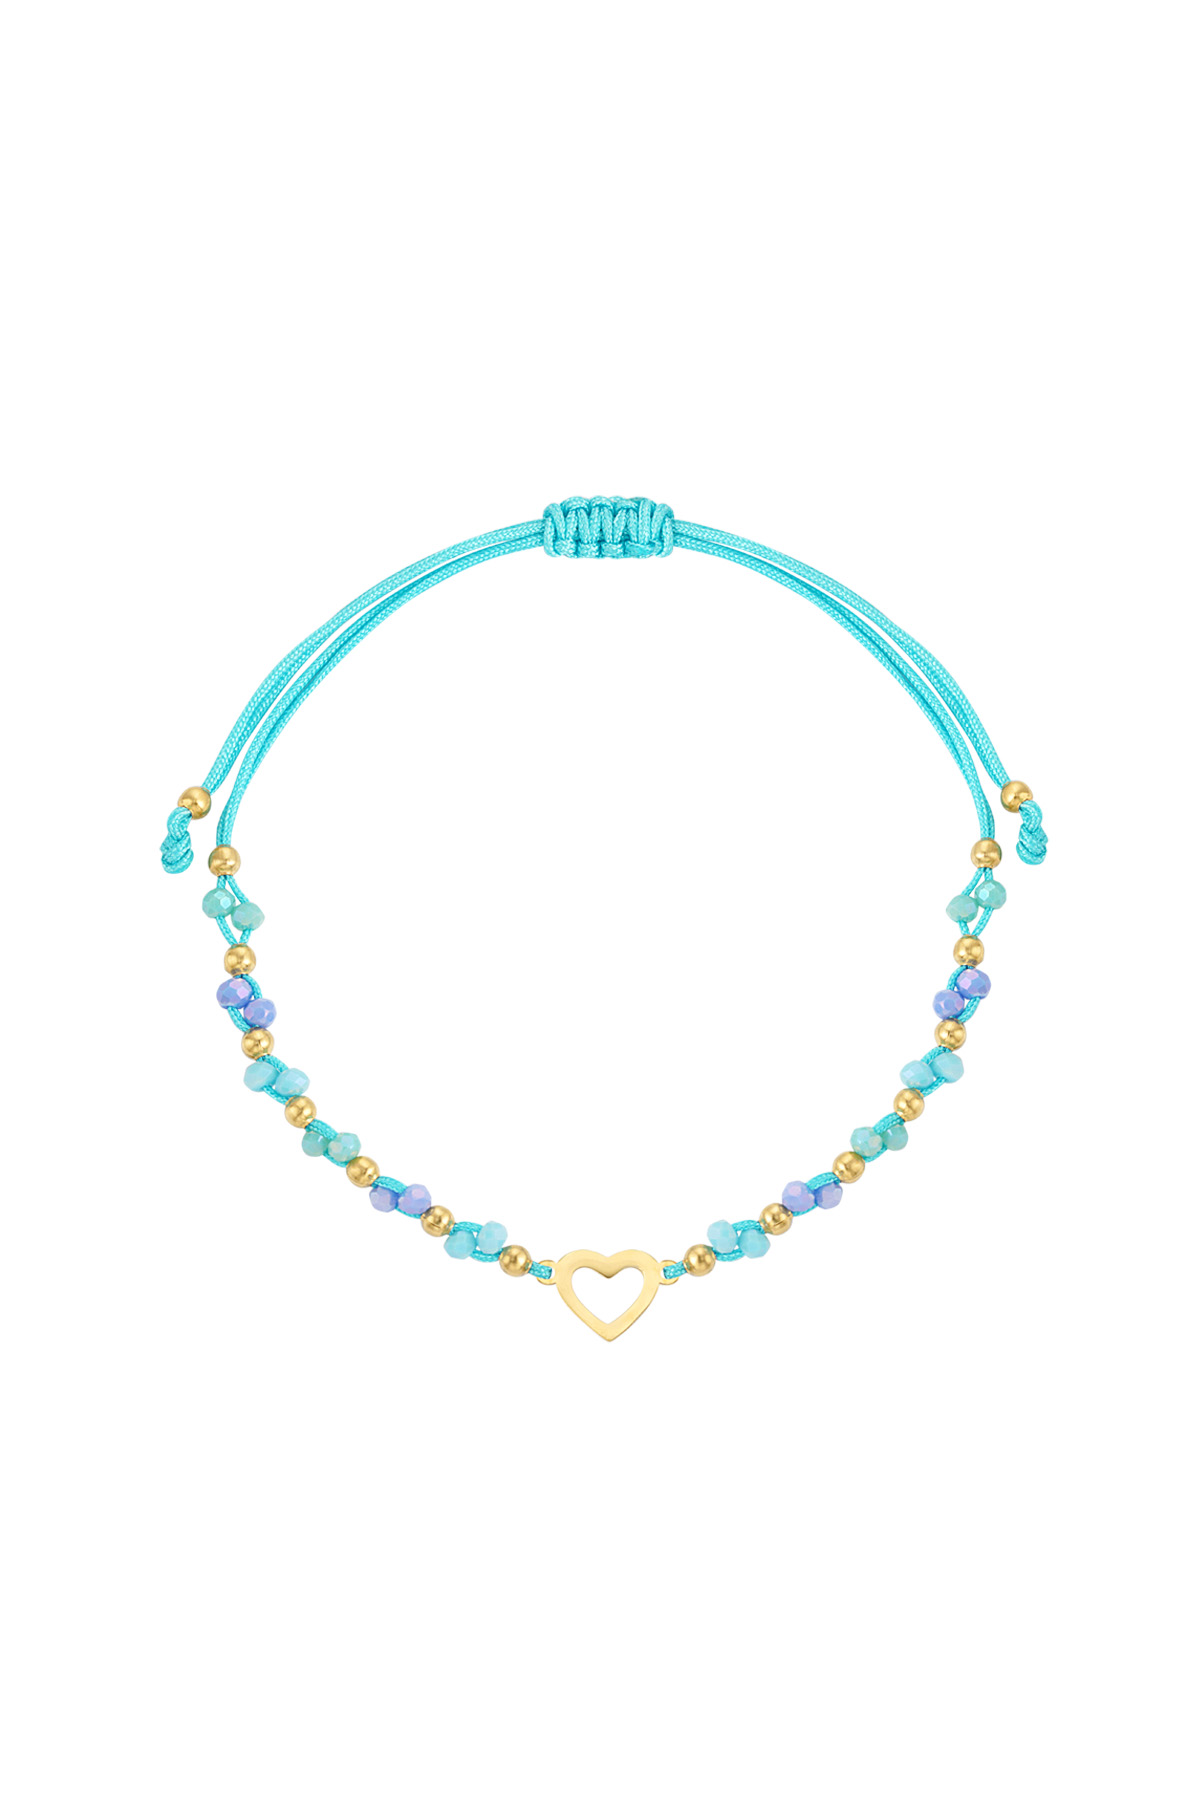 Summer bracelet colorful heart - blue gold